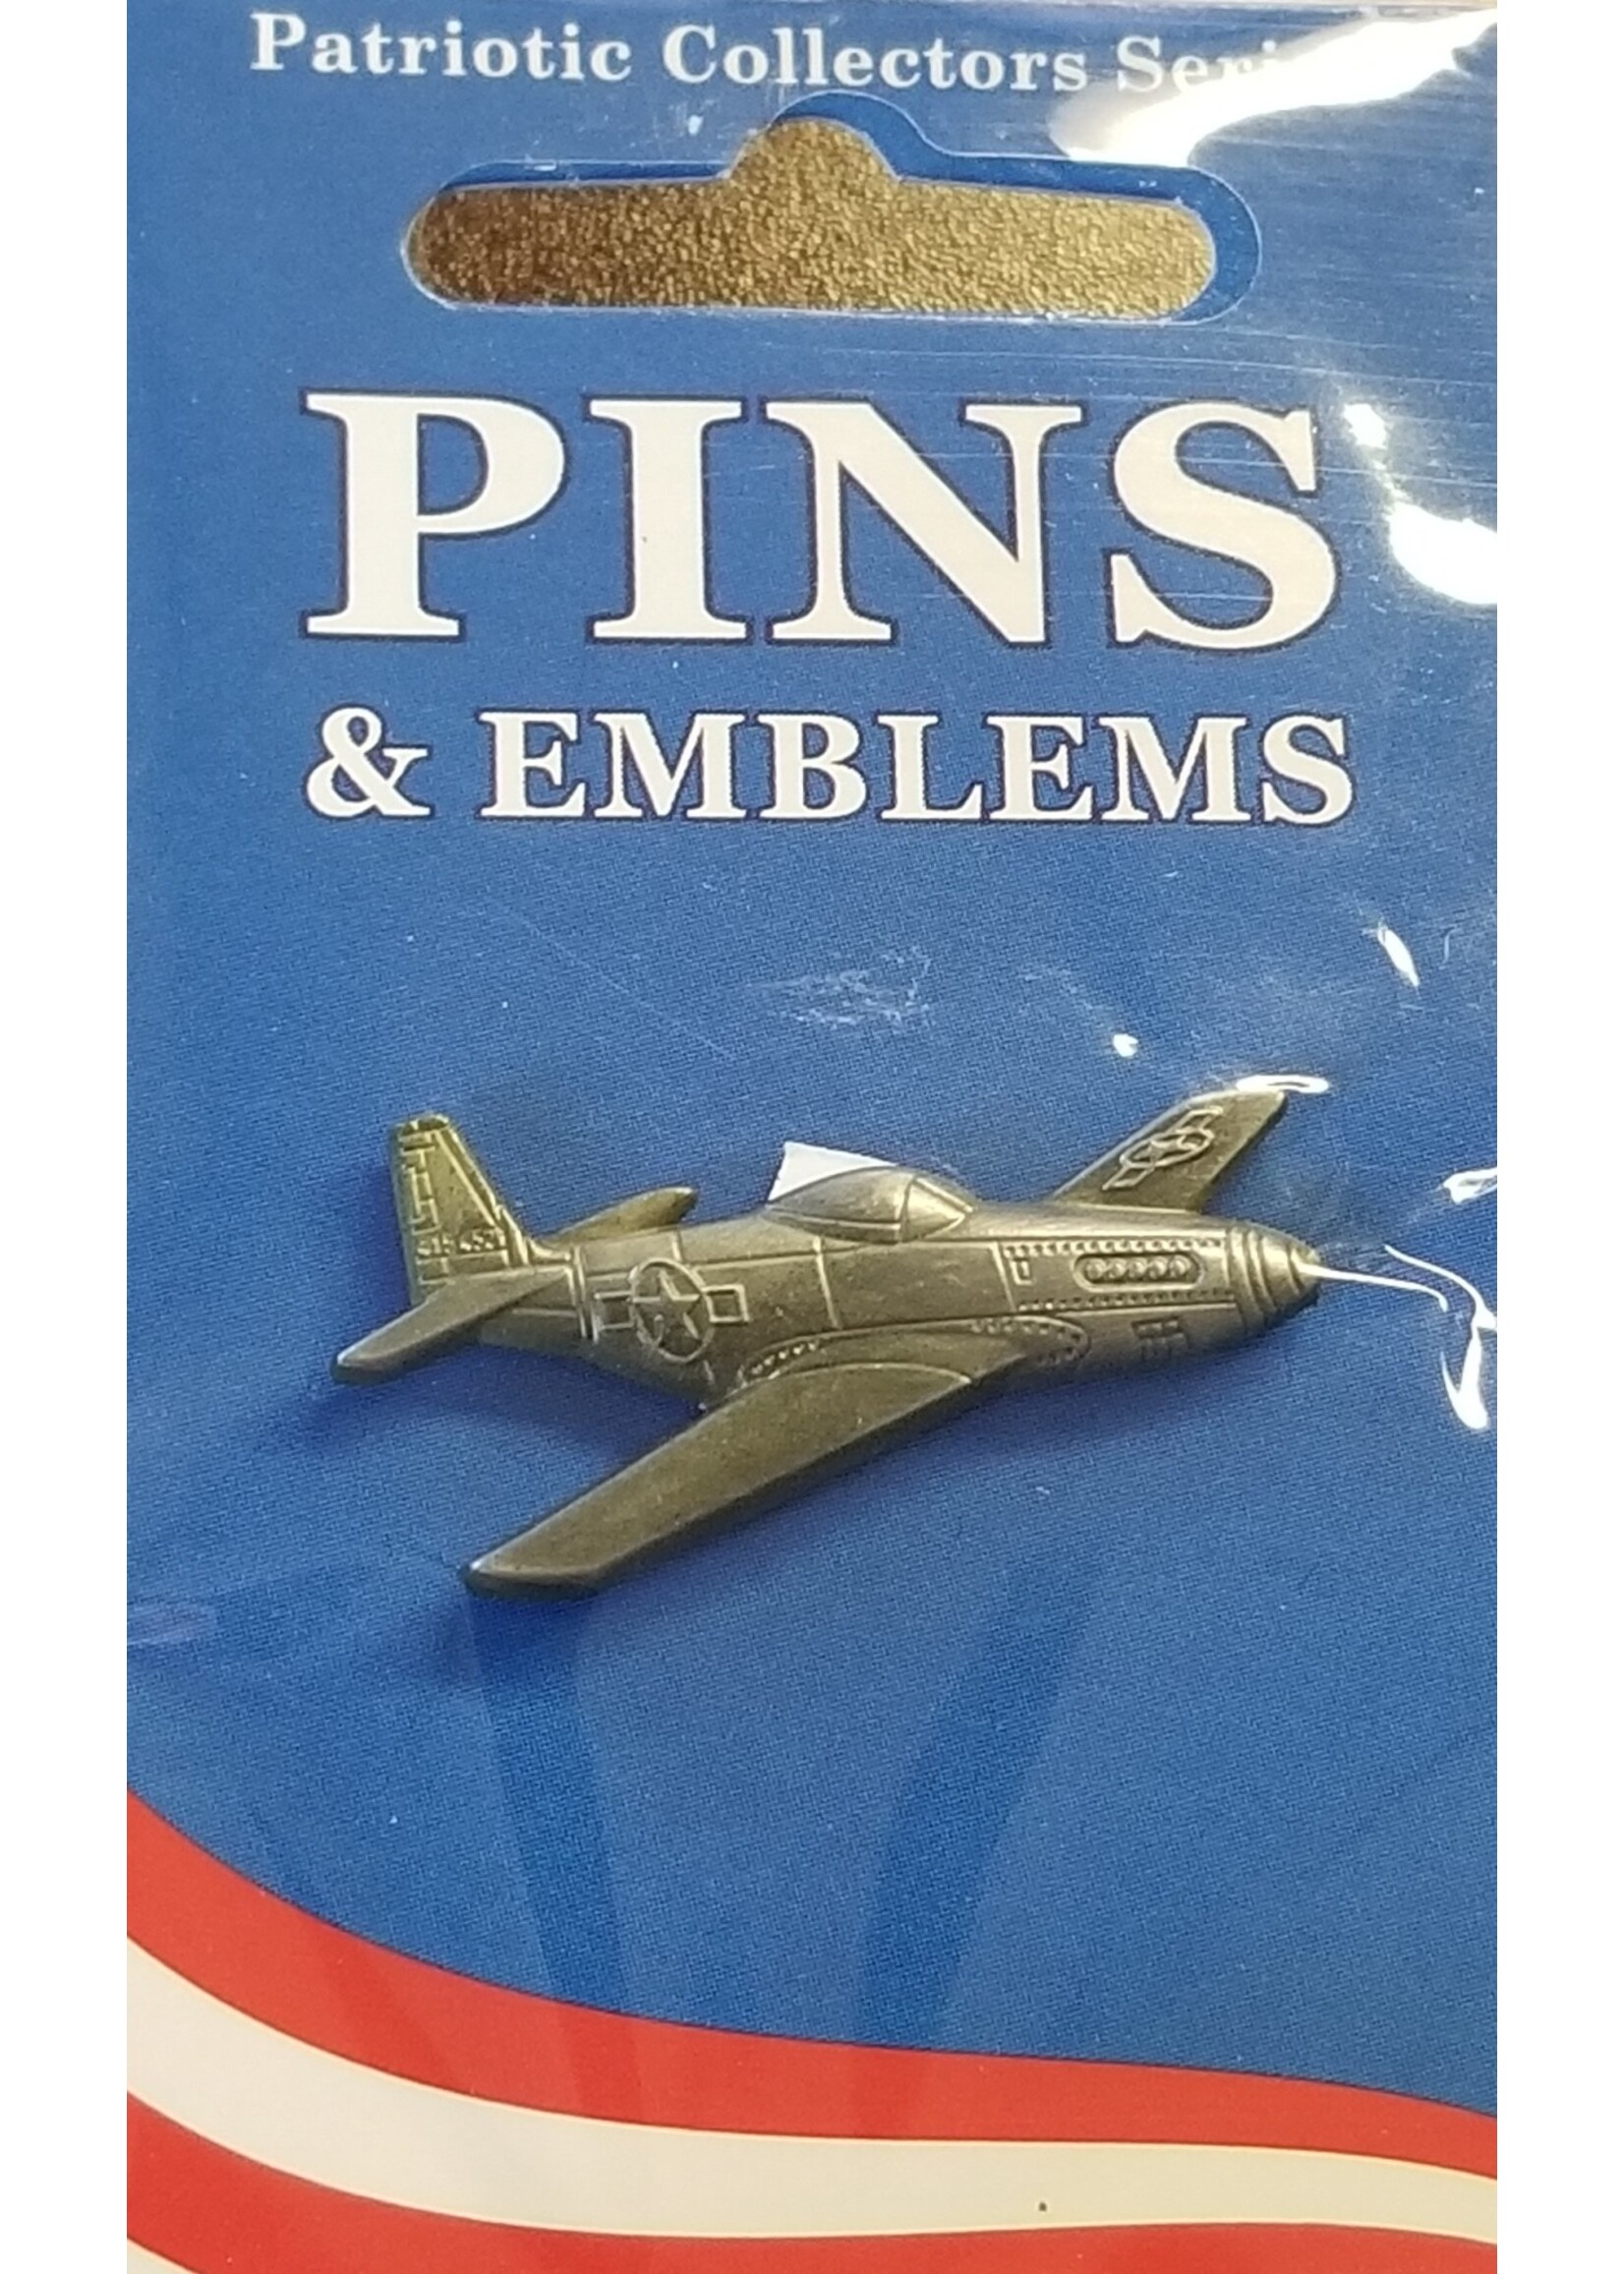 Eagle Emblems Pin P-51 Mustang